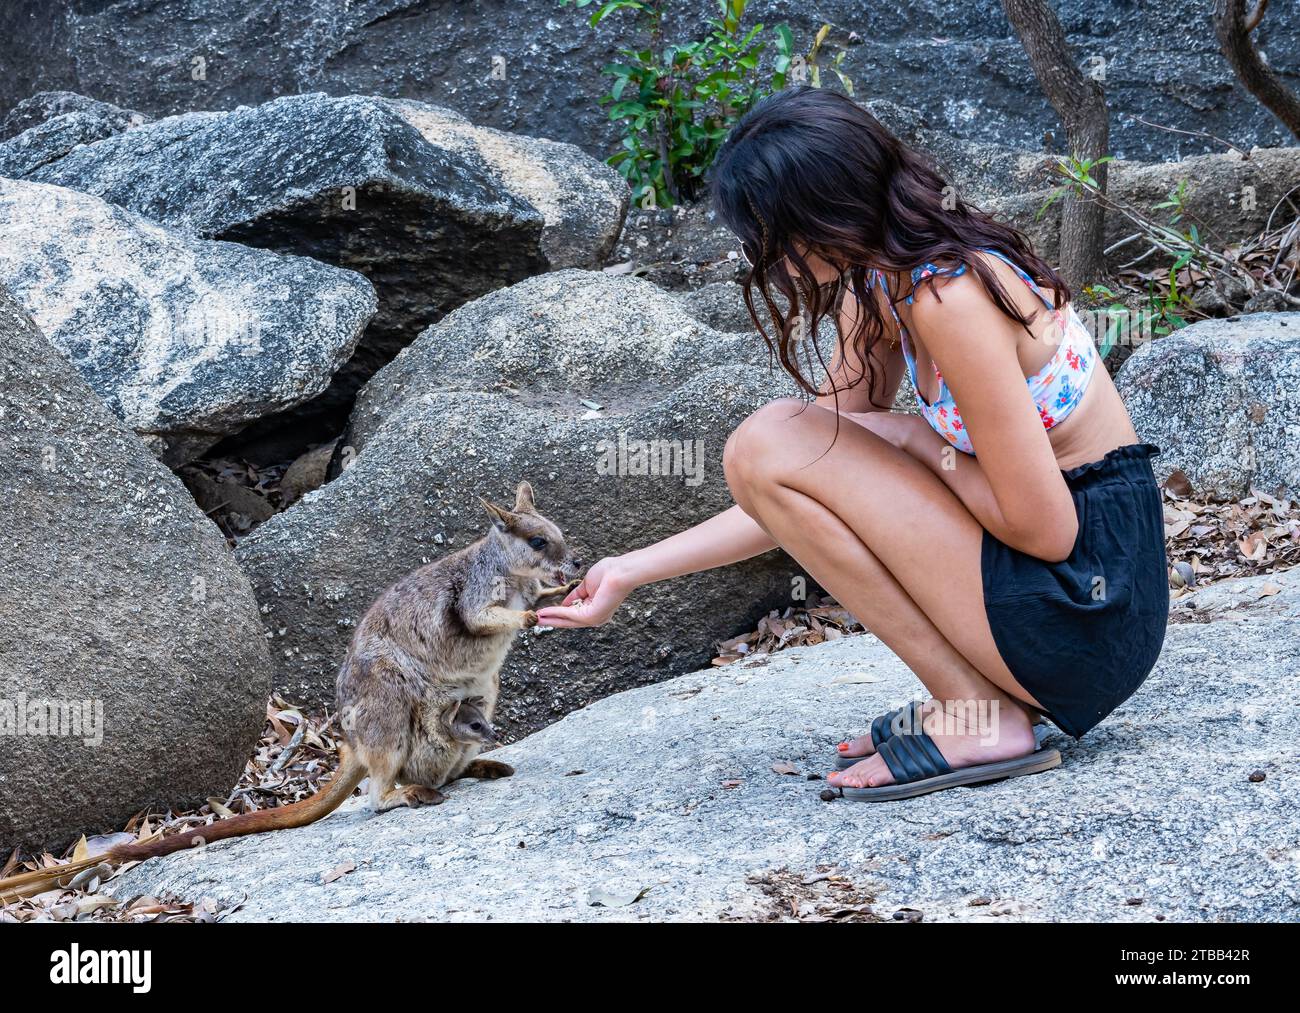 Eine junge Frau füttert ein Mareeba-Felsenwallaby (Petrogale mareeba) in einem Naturschutzgebiet. Australien. Stockfoto